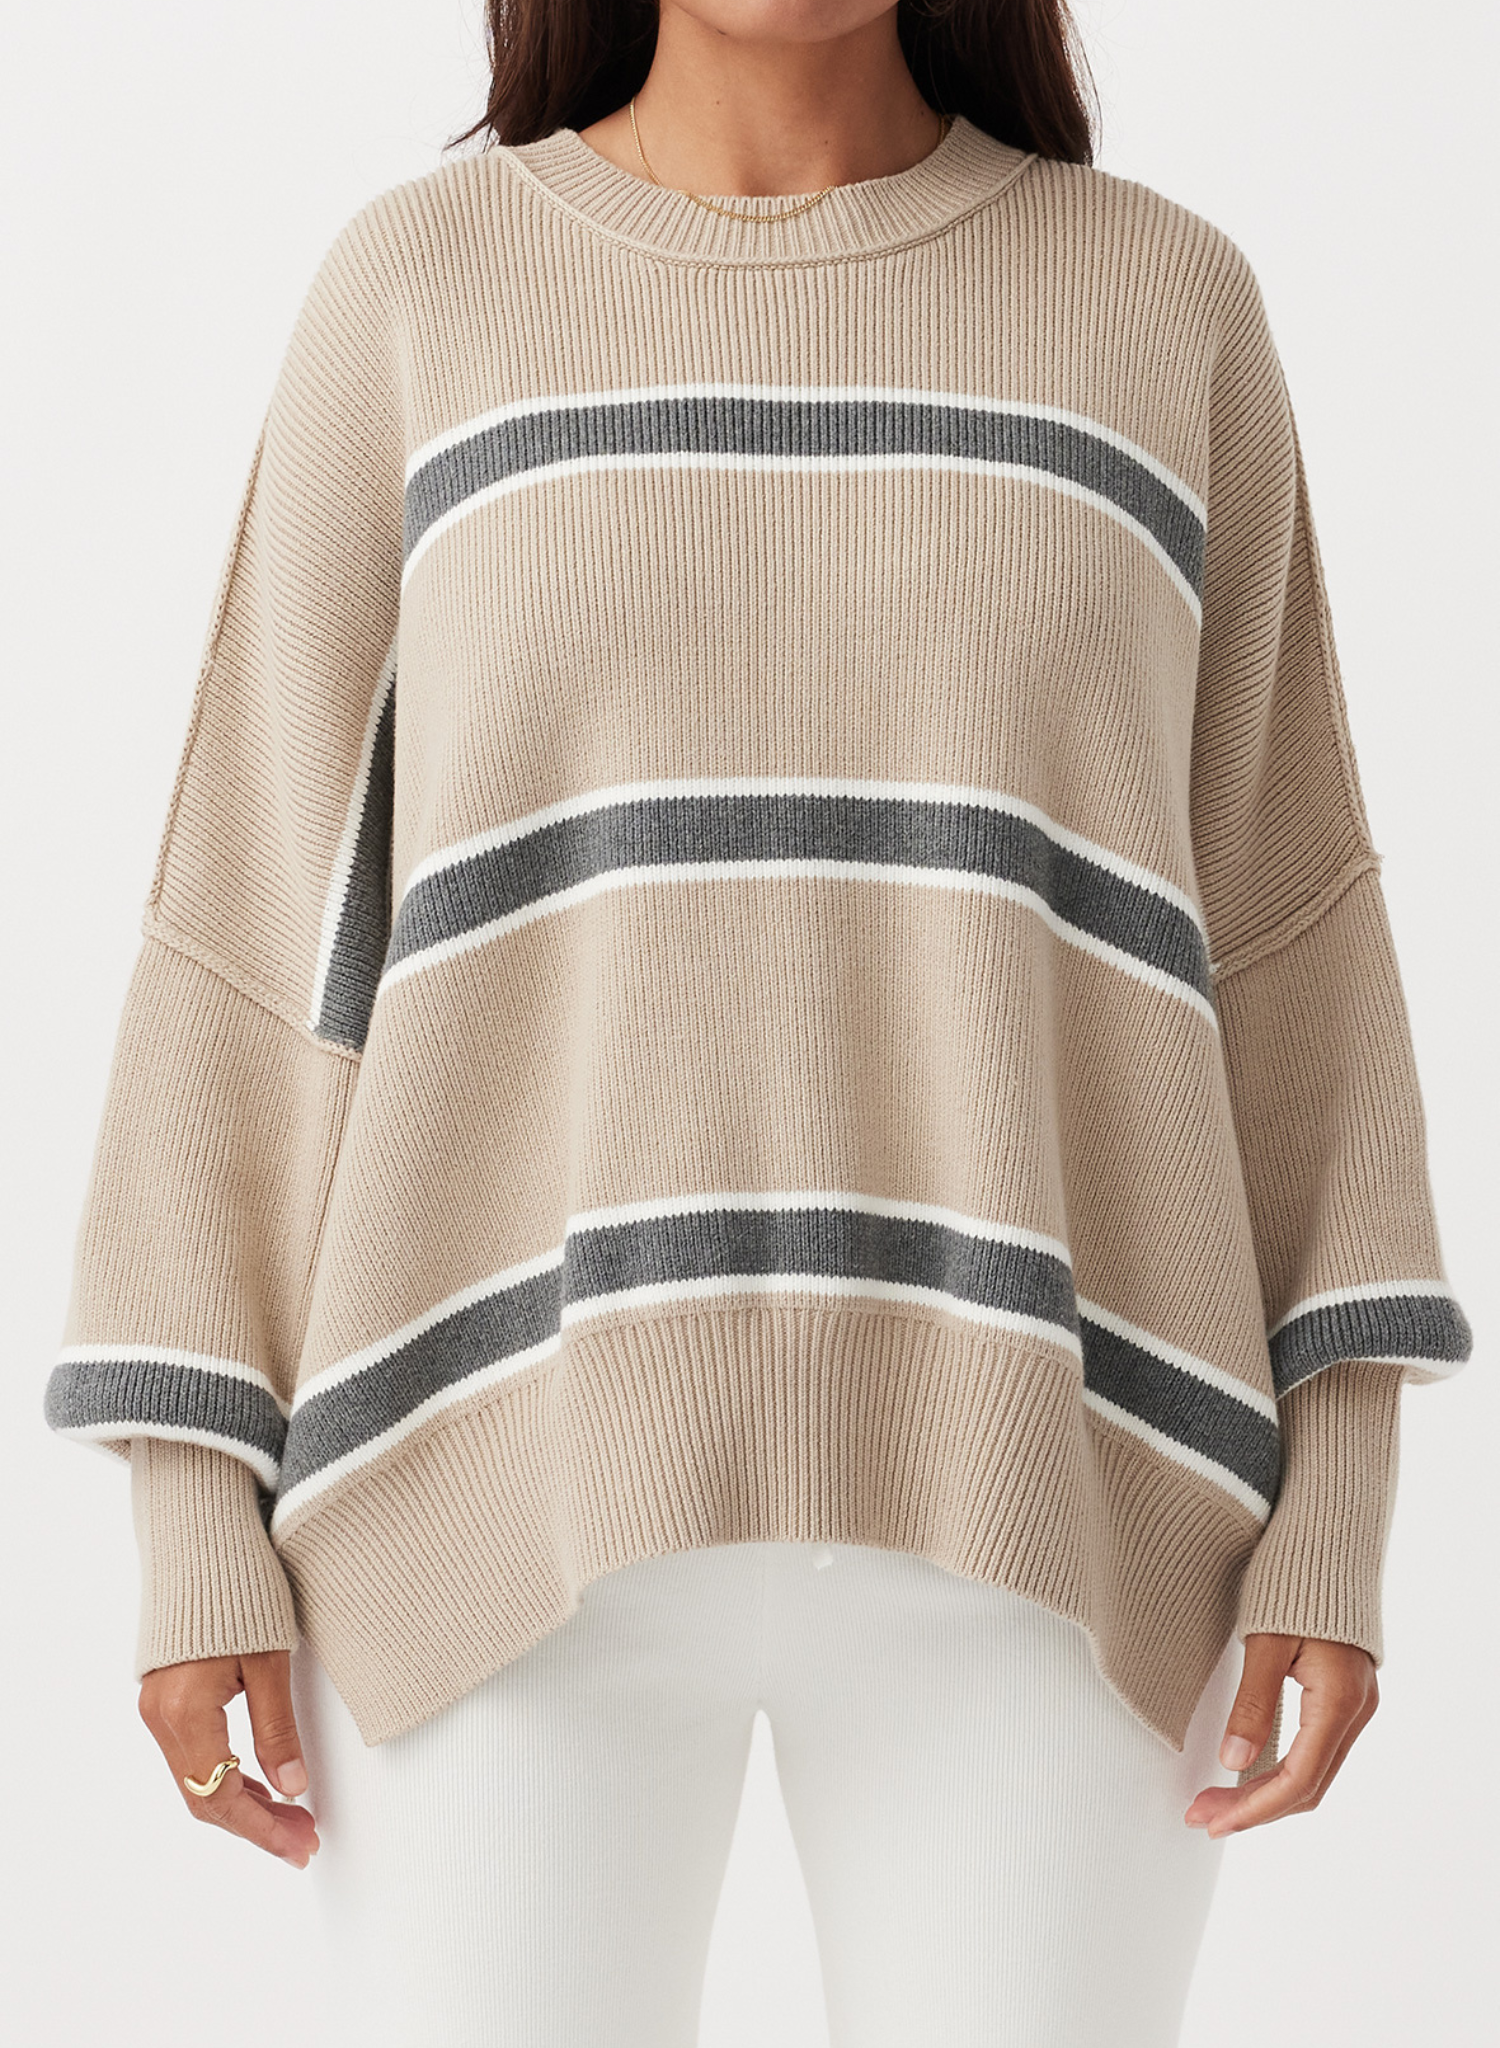 Harper Stripe Sweater - Taupe, Cream & Dark Grey Marle